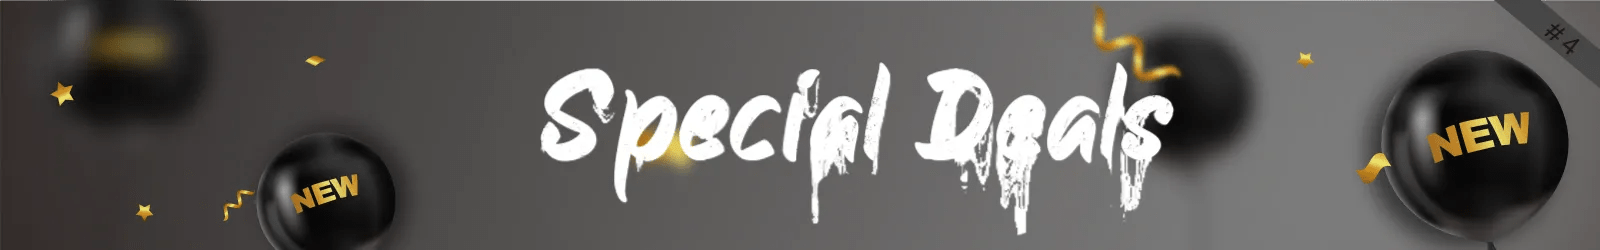 Black Friday Special Deals - Vector Optics Online Store